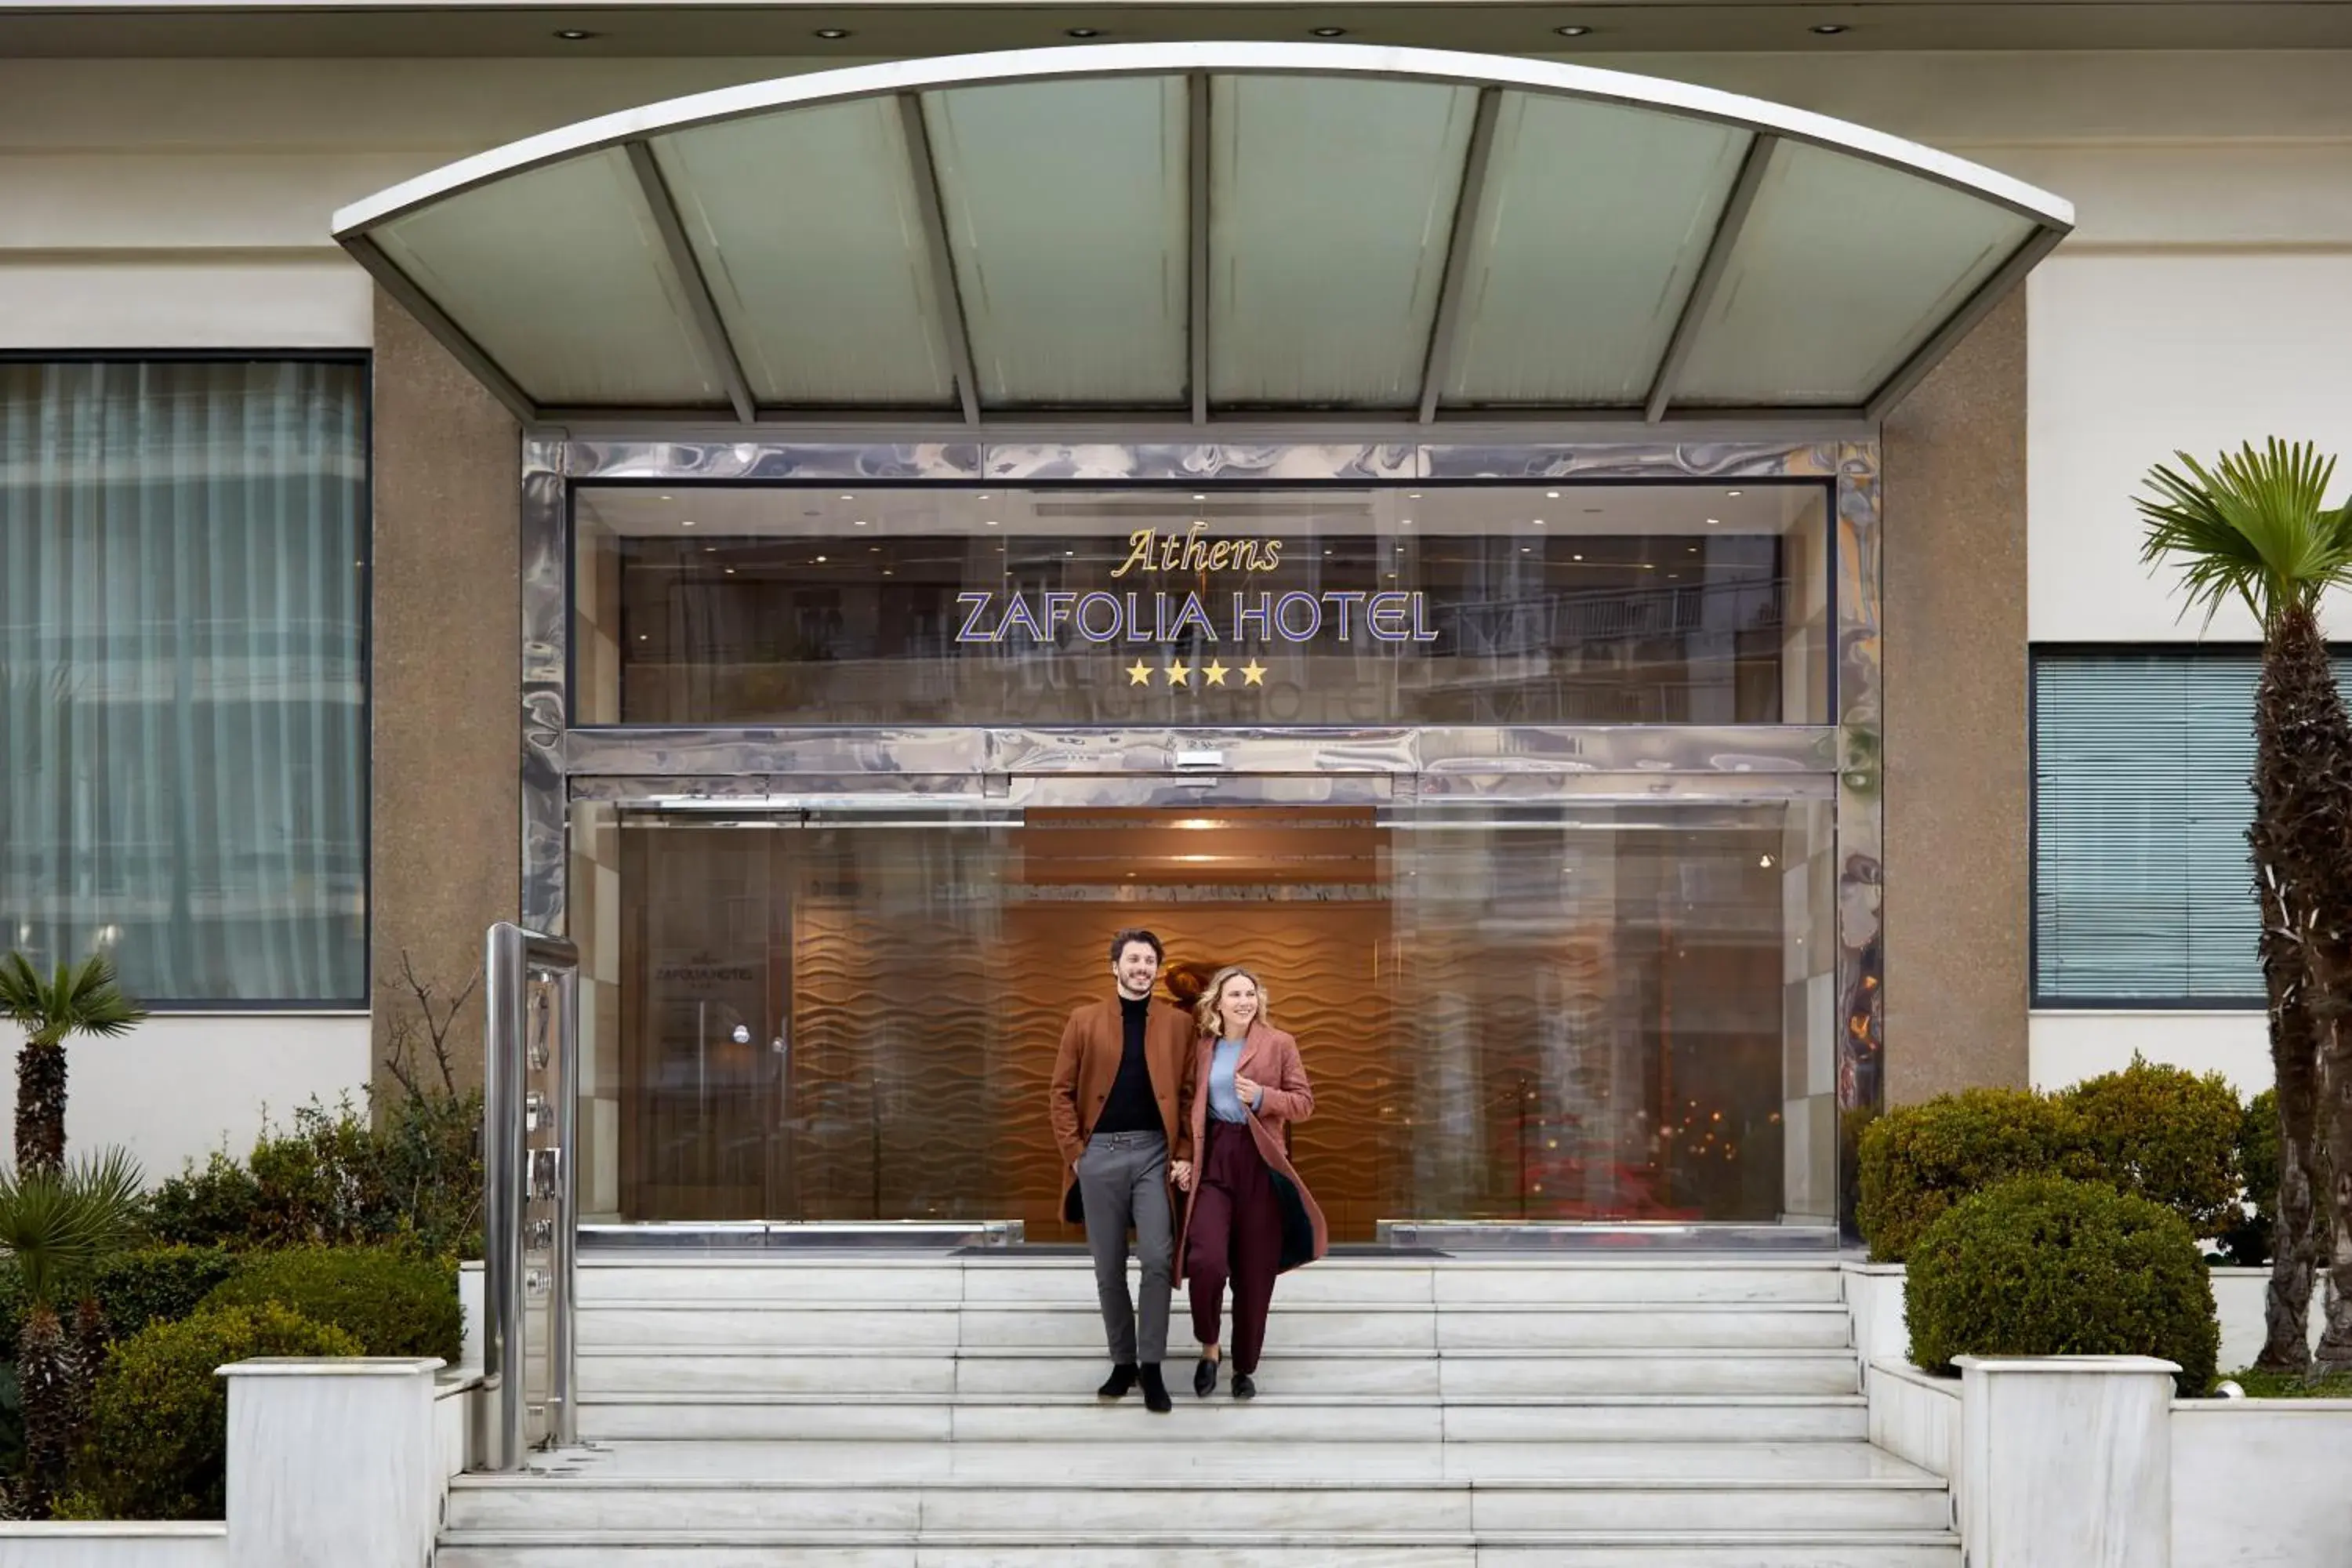 Facade/entrance in Athens Zafolia Hotel